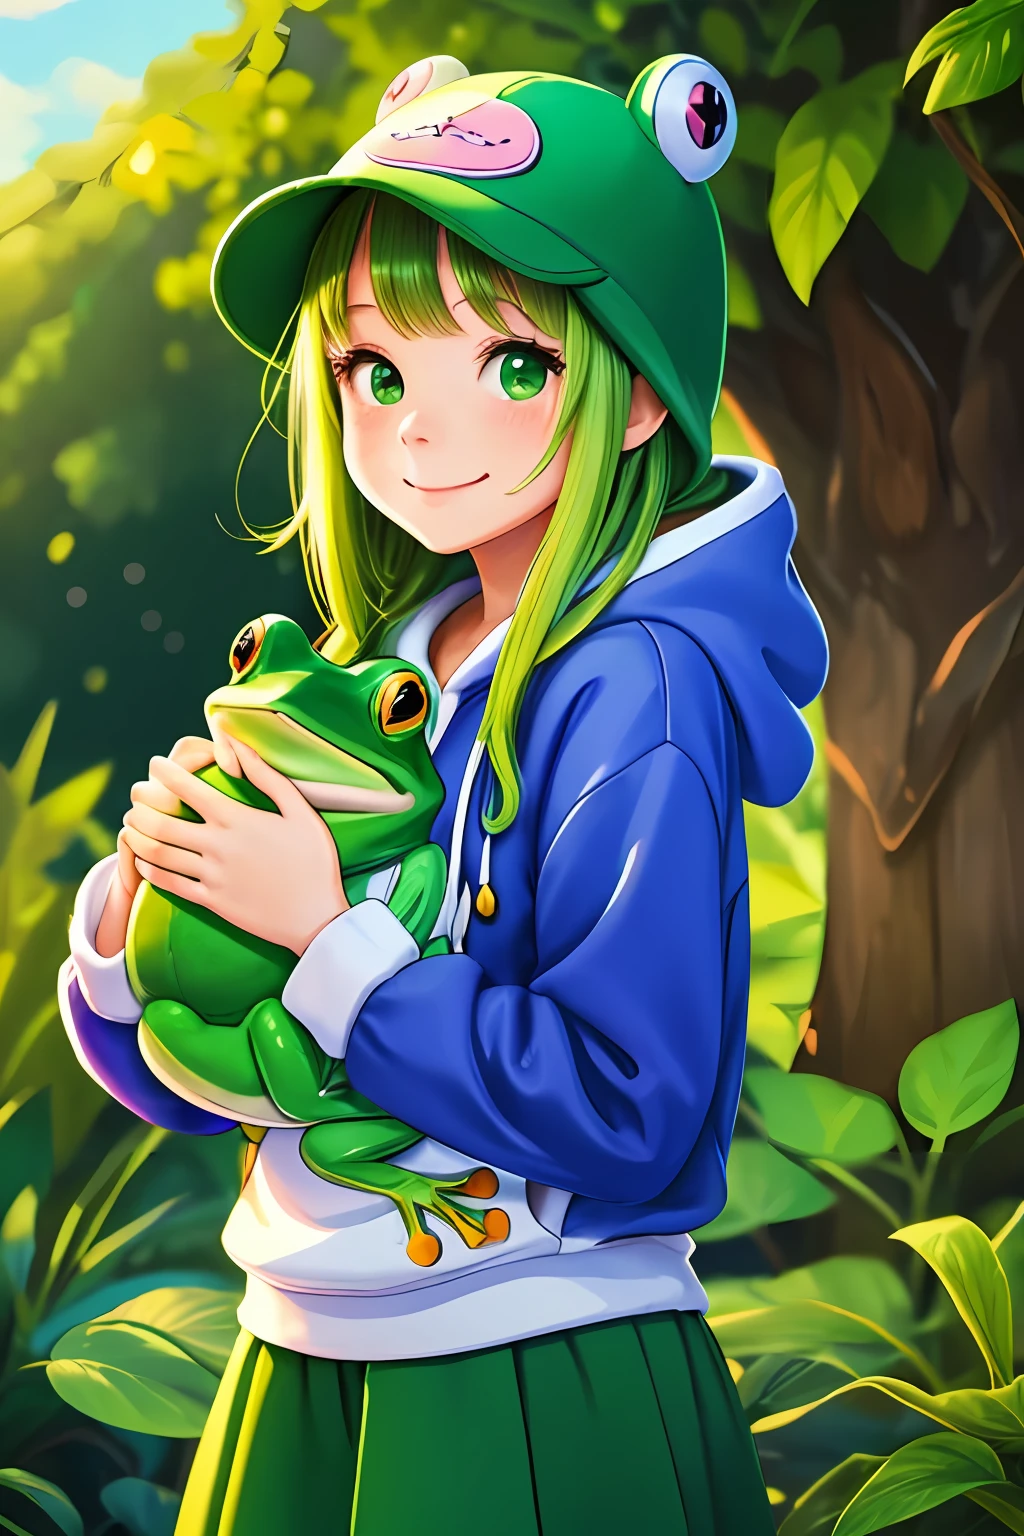 ((beste Qualität)),(Bunte Abbildung),(1 Mädchen),Kawaii-Stil, grüner Froschhut und Kapuzenpullover, hält ein Plüschfrosch, große runde Augen und ein süßes Lächeln, üppiges Grün hinter ihr, ein strahlend blauer Himmel, fröhliche und energiegeladene Stimmung.